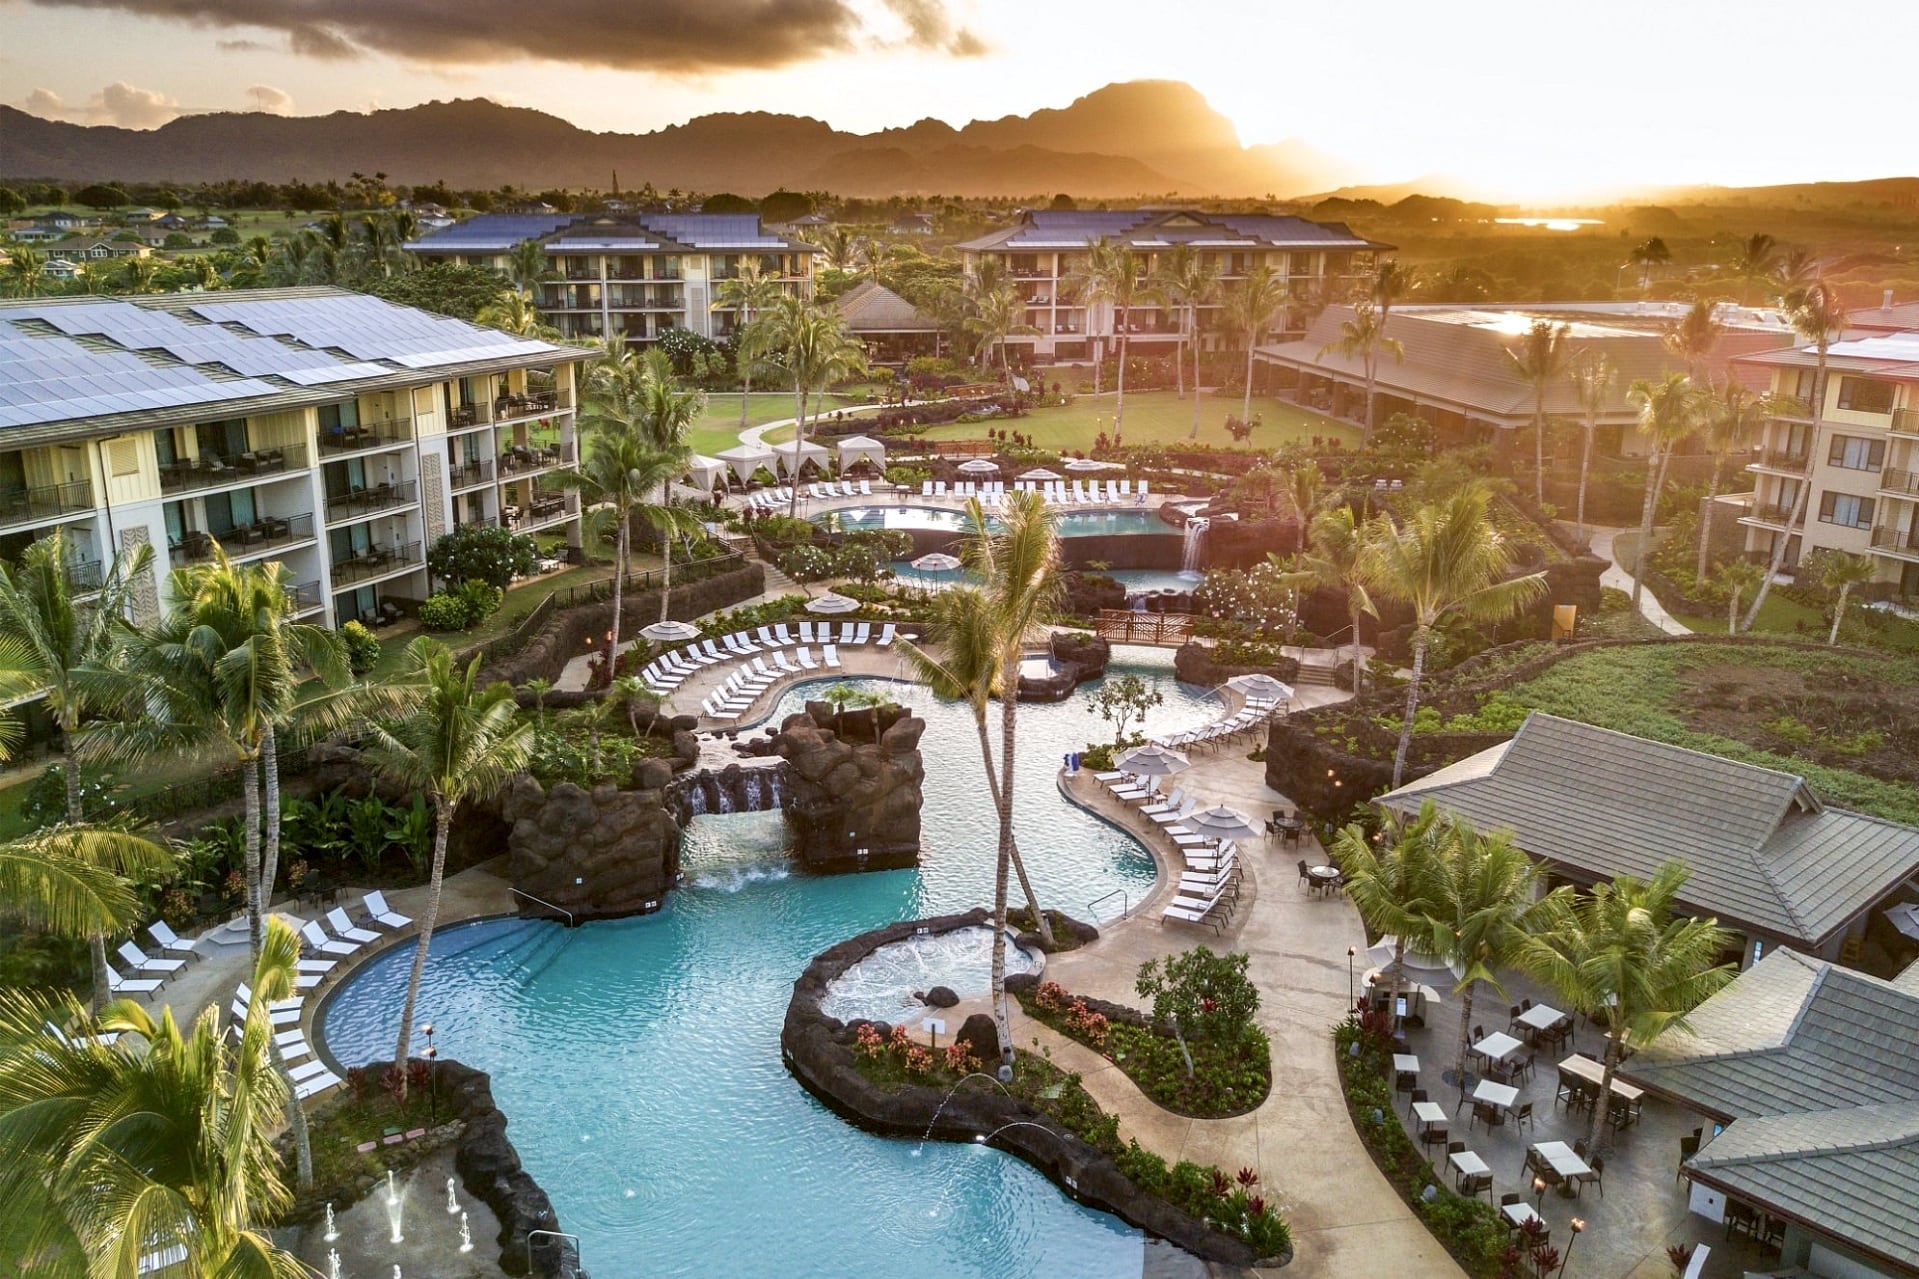 Kauai resorts and top resorts in Kauai Hawaii